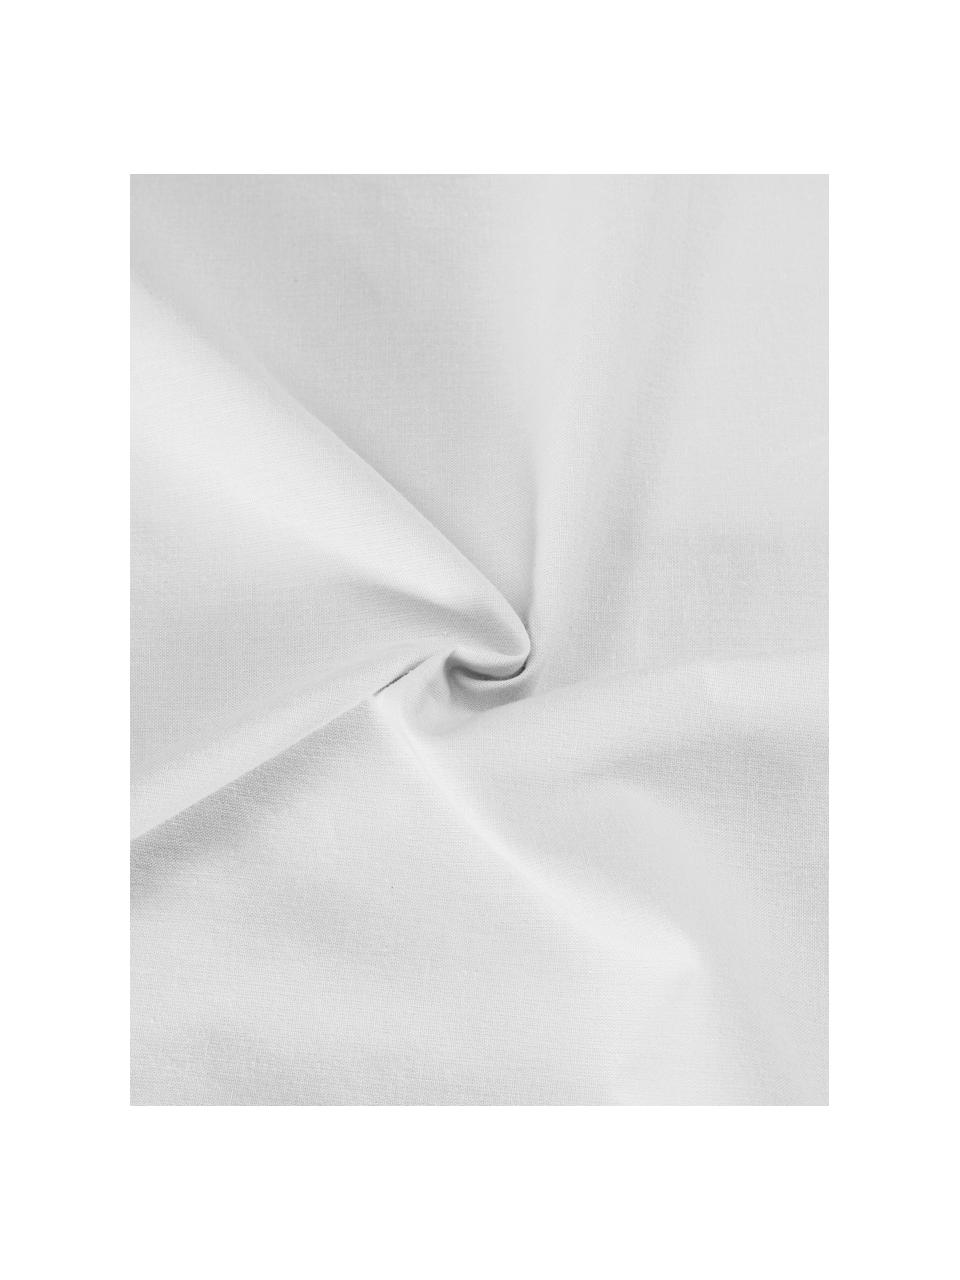 Taies d'oreiller plumetis Aloide, 2 pièces, Blanc, larg. 50 x long. 70 cm